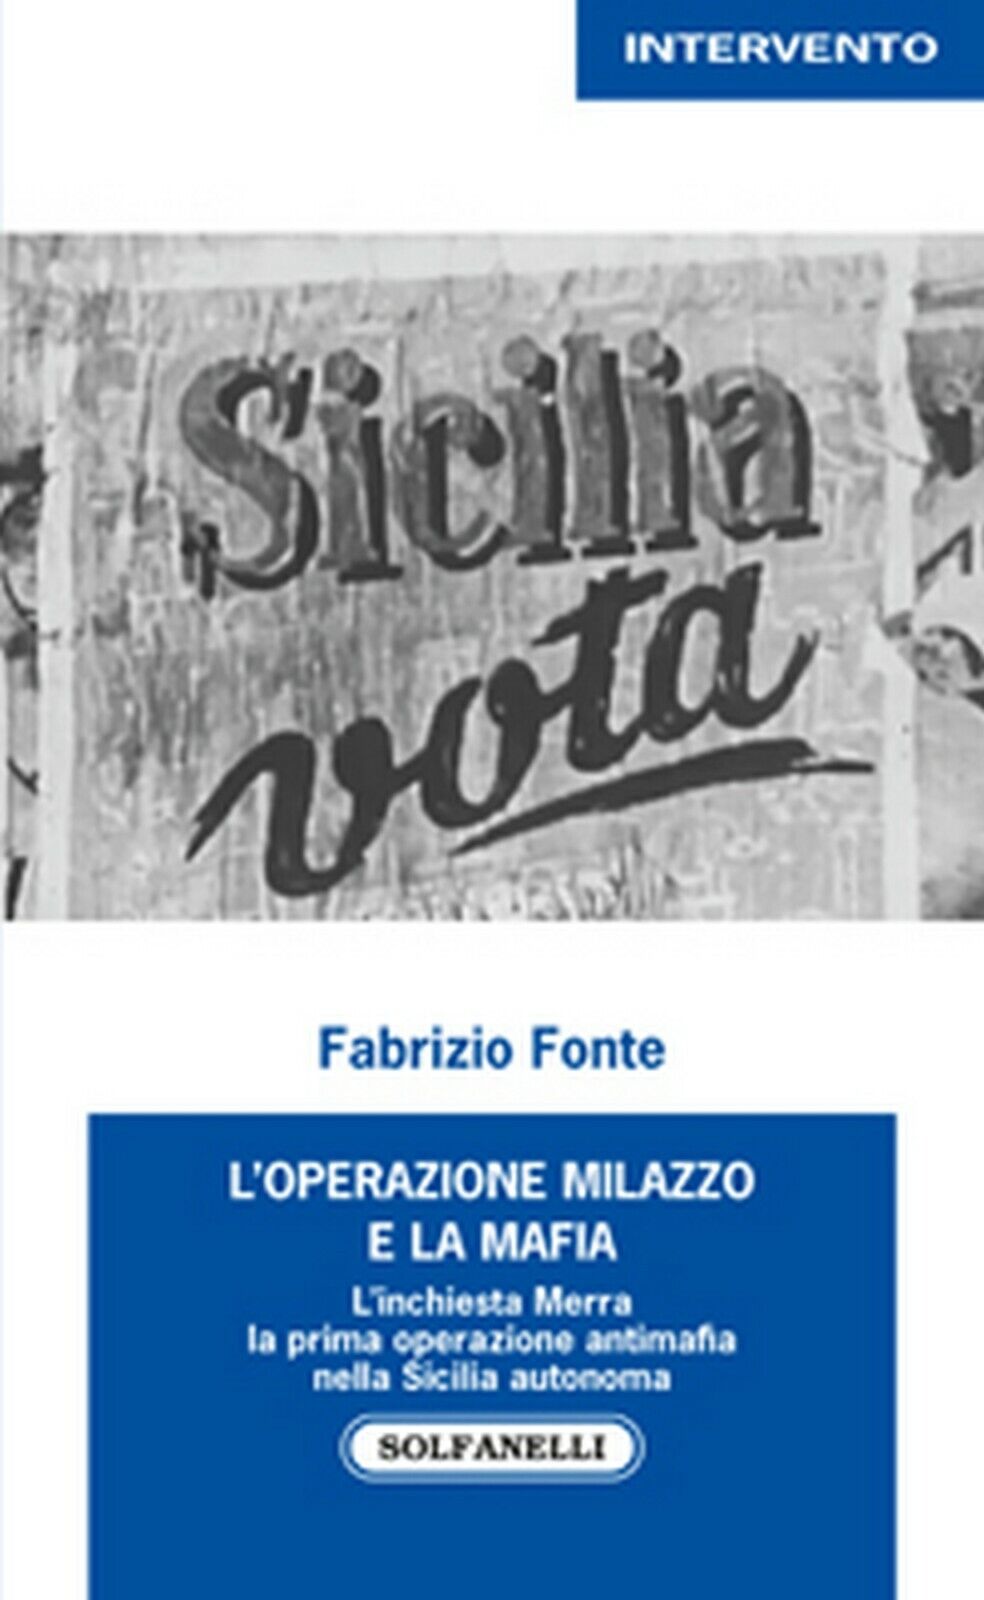 L'OPERAZIONE MILAZZO E LA MAFIA  di Fabrizio Fonte,  Solfanelli Edizioni